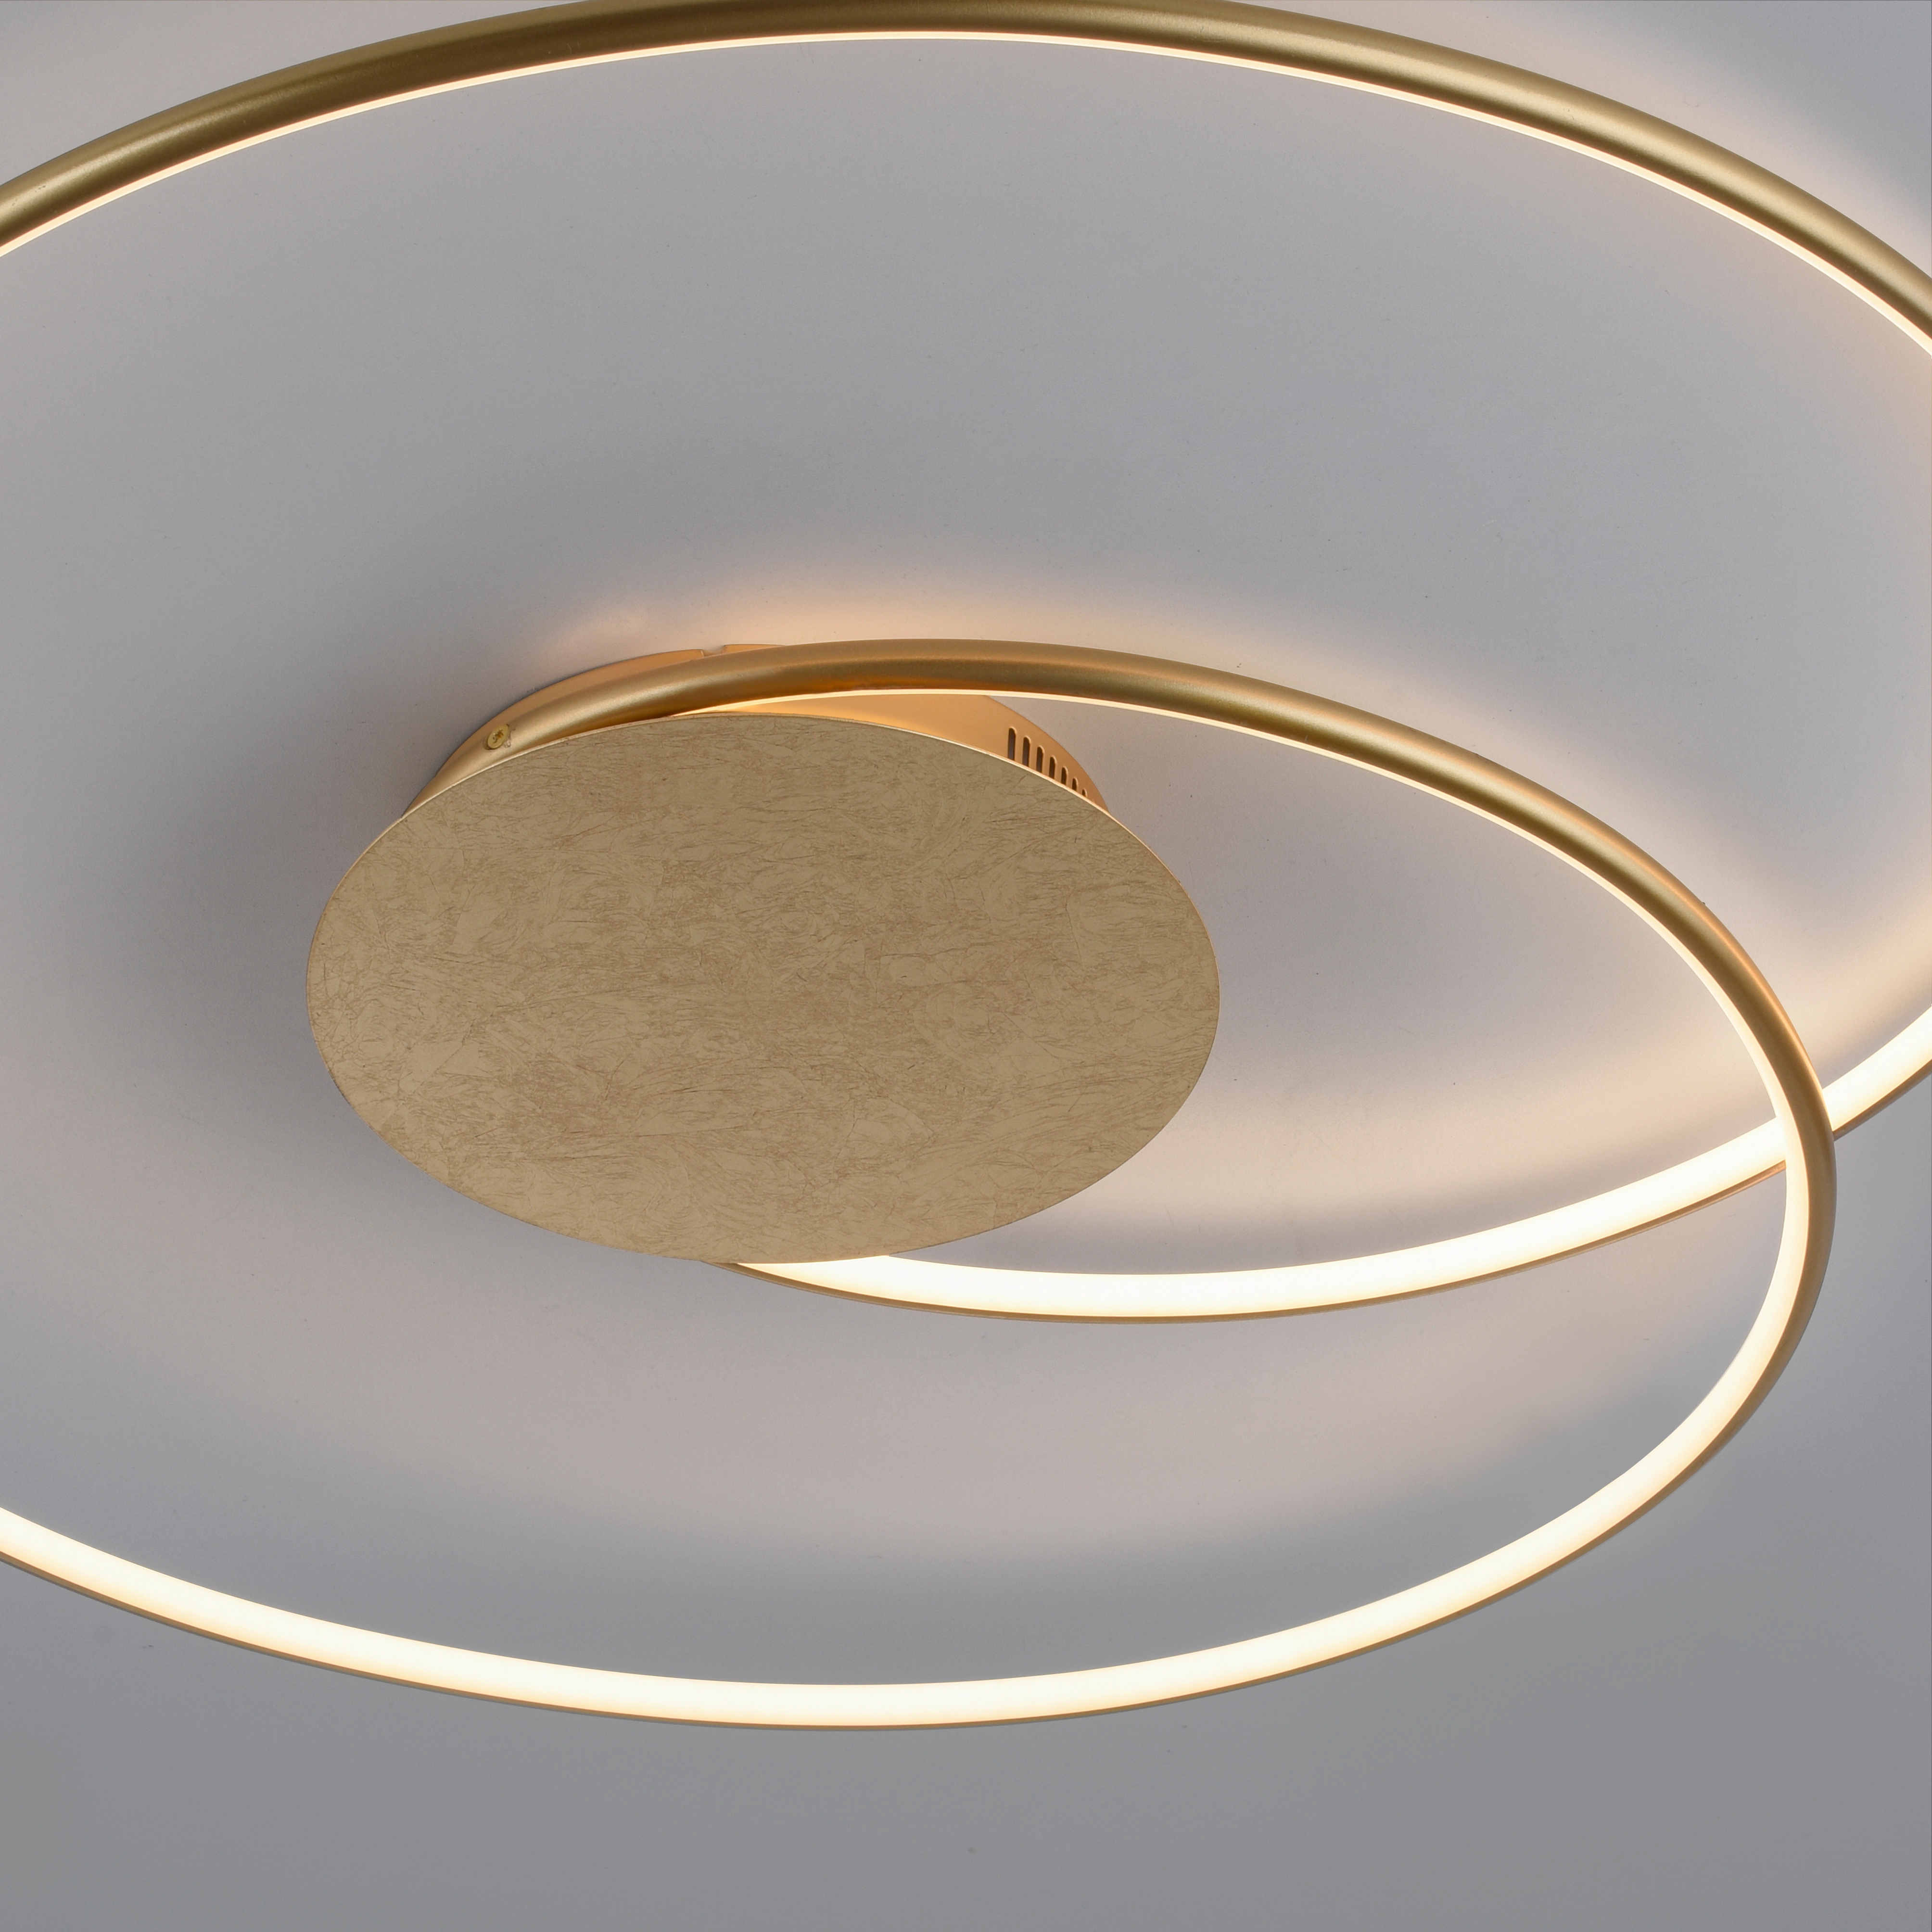 Paul Neuhaus LED-Deckenleuchte Nastro 70 cm x 65 cm Gold kaufen bei OBI